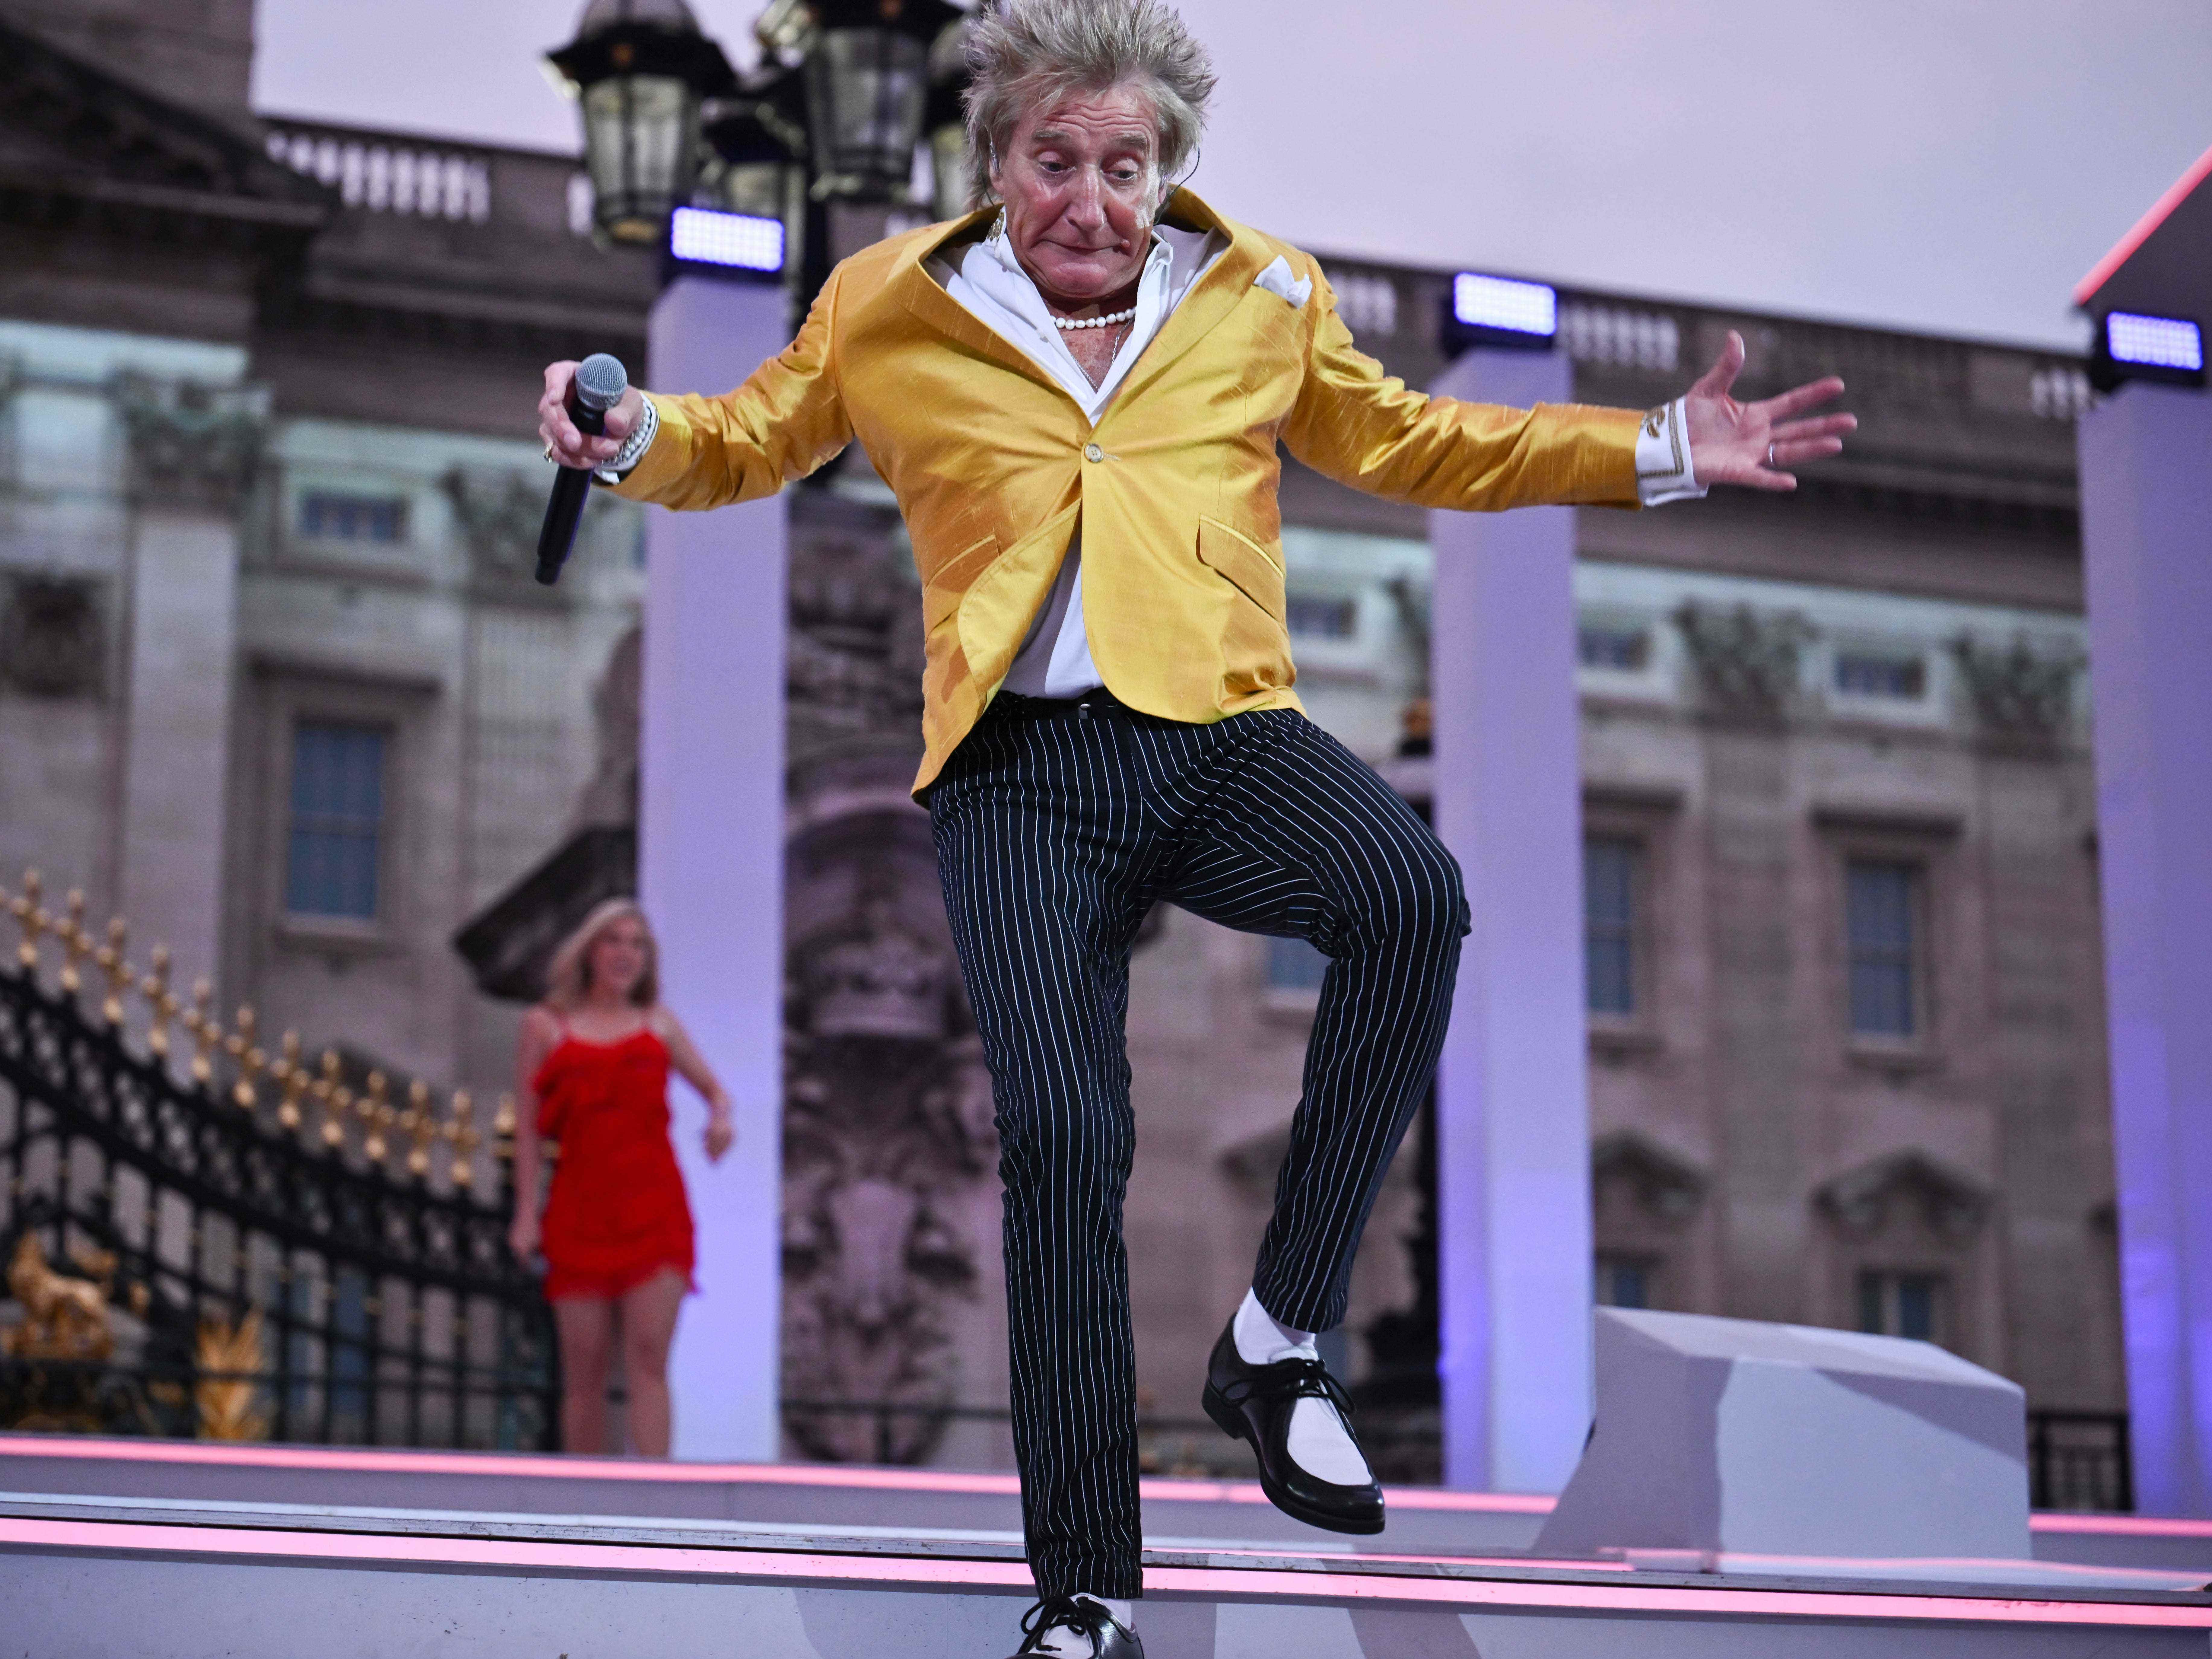 Sir Rod Stewart auf der Bühne während der Platinum Party im Palast vor dem Buckingham Palace am 4. Juni 2022 in London, England.